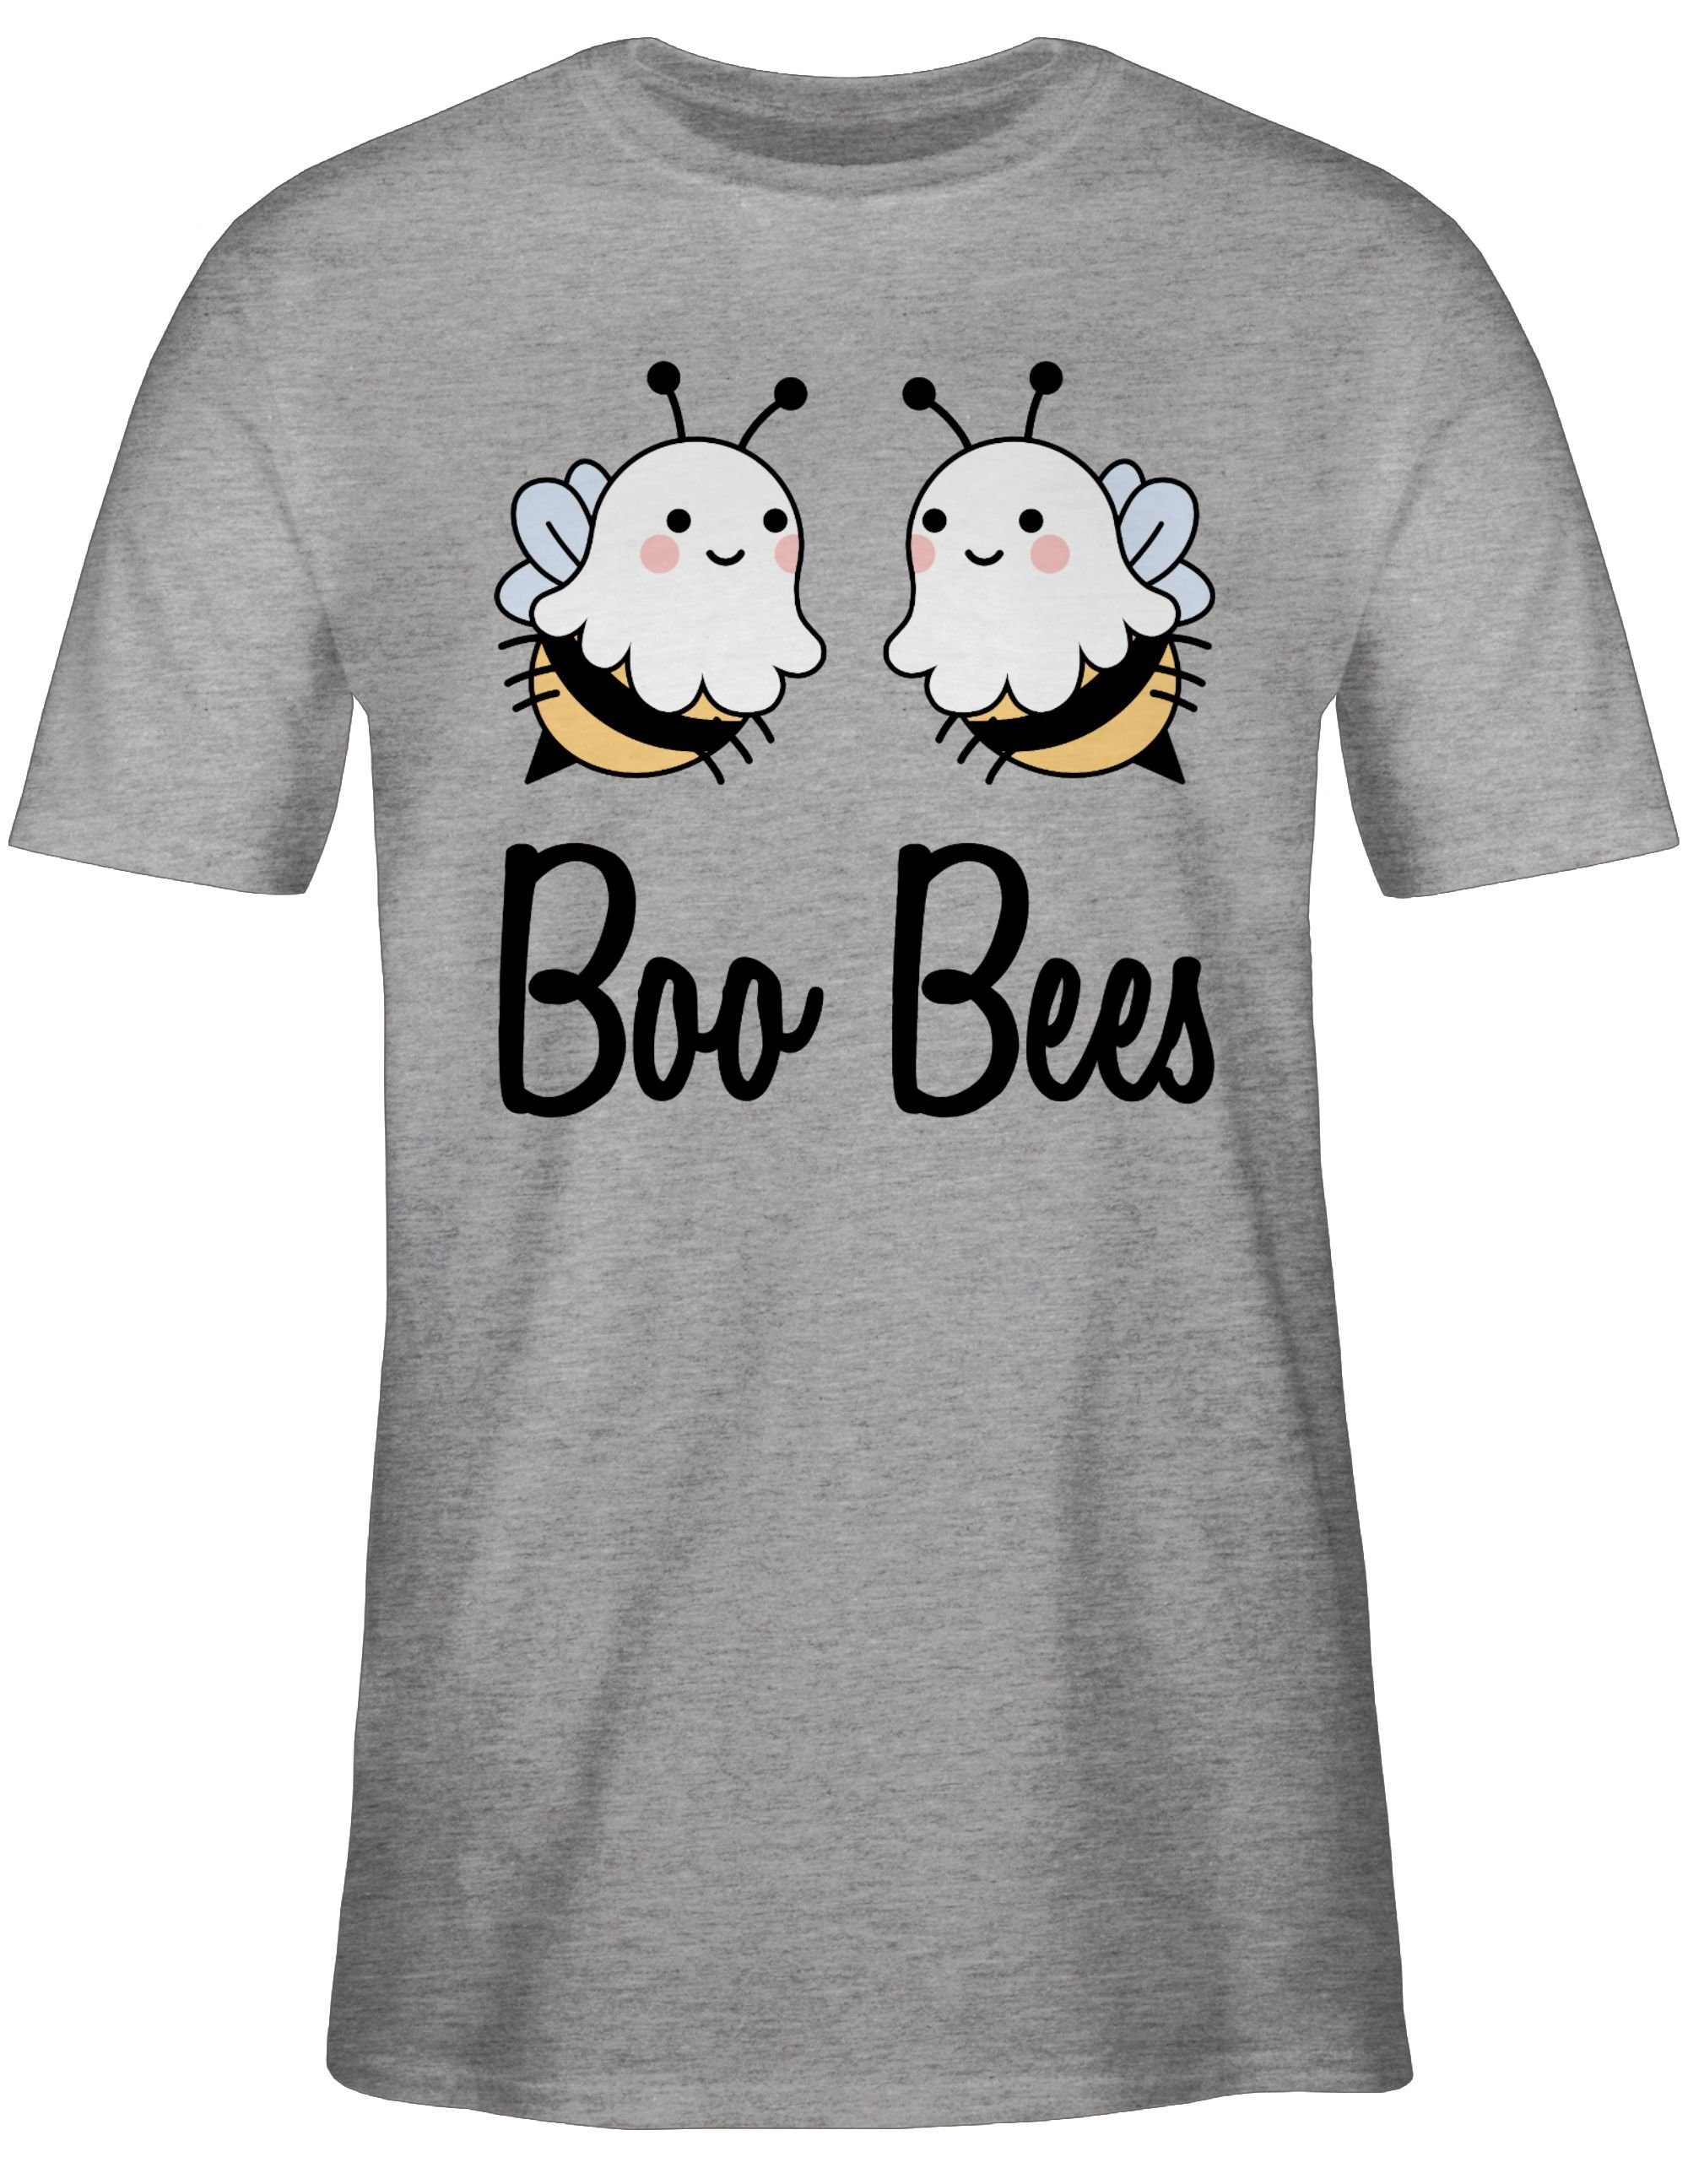 Shirtracer T-Shirt Boo Bees Boobees Bienen Boobs Halloween Kostüme Herren 1 Grau meliert